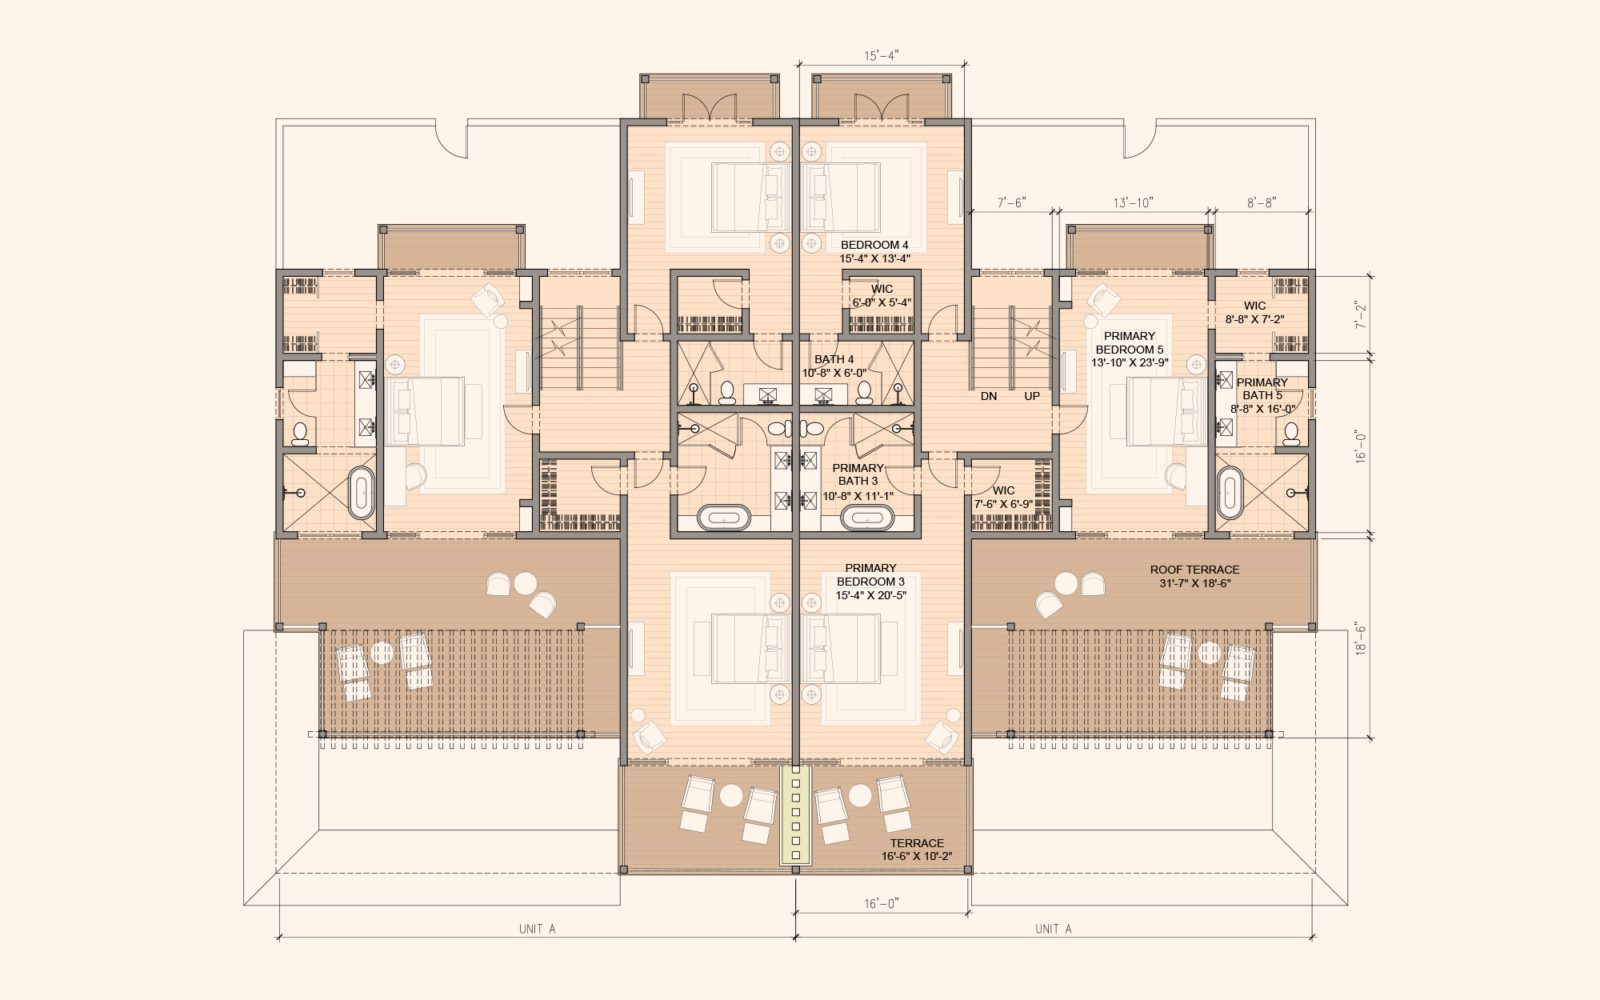 The upper level 5 bedroom floorplan